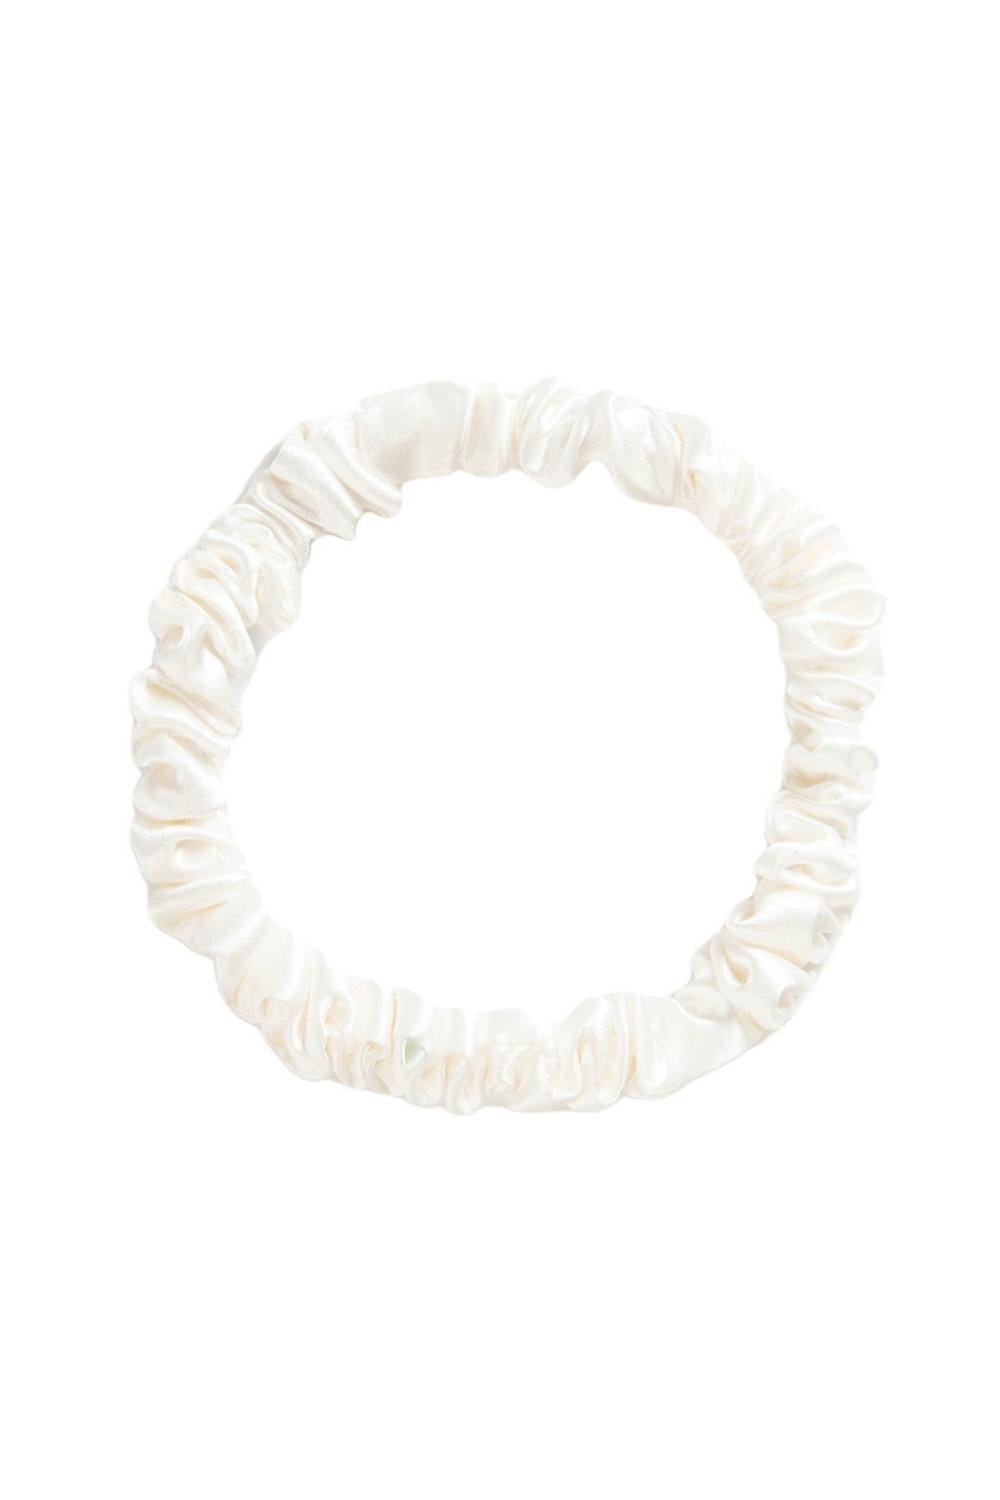 Silk Hair Ties - Pearl White - BASK™